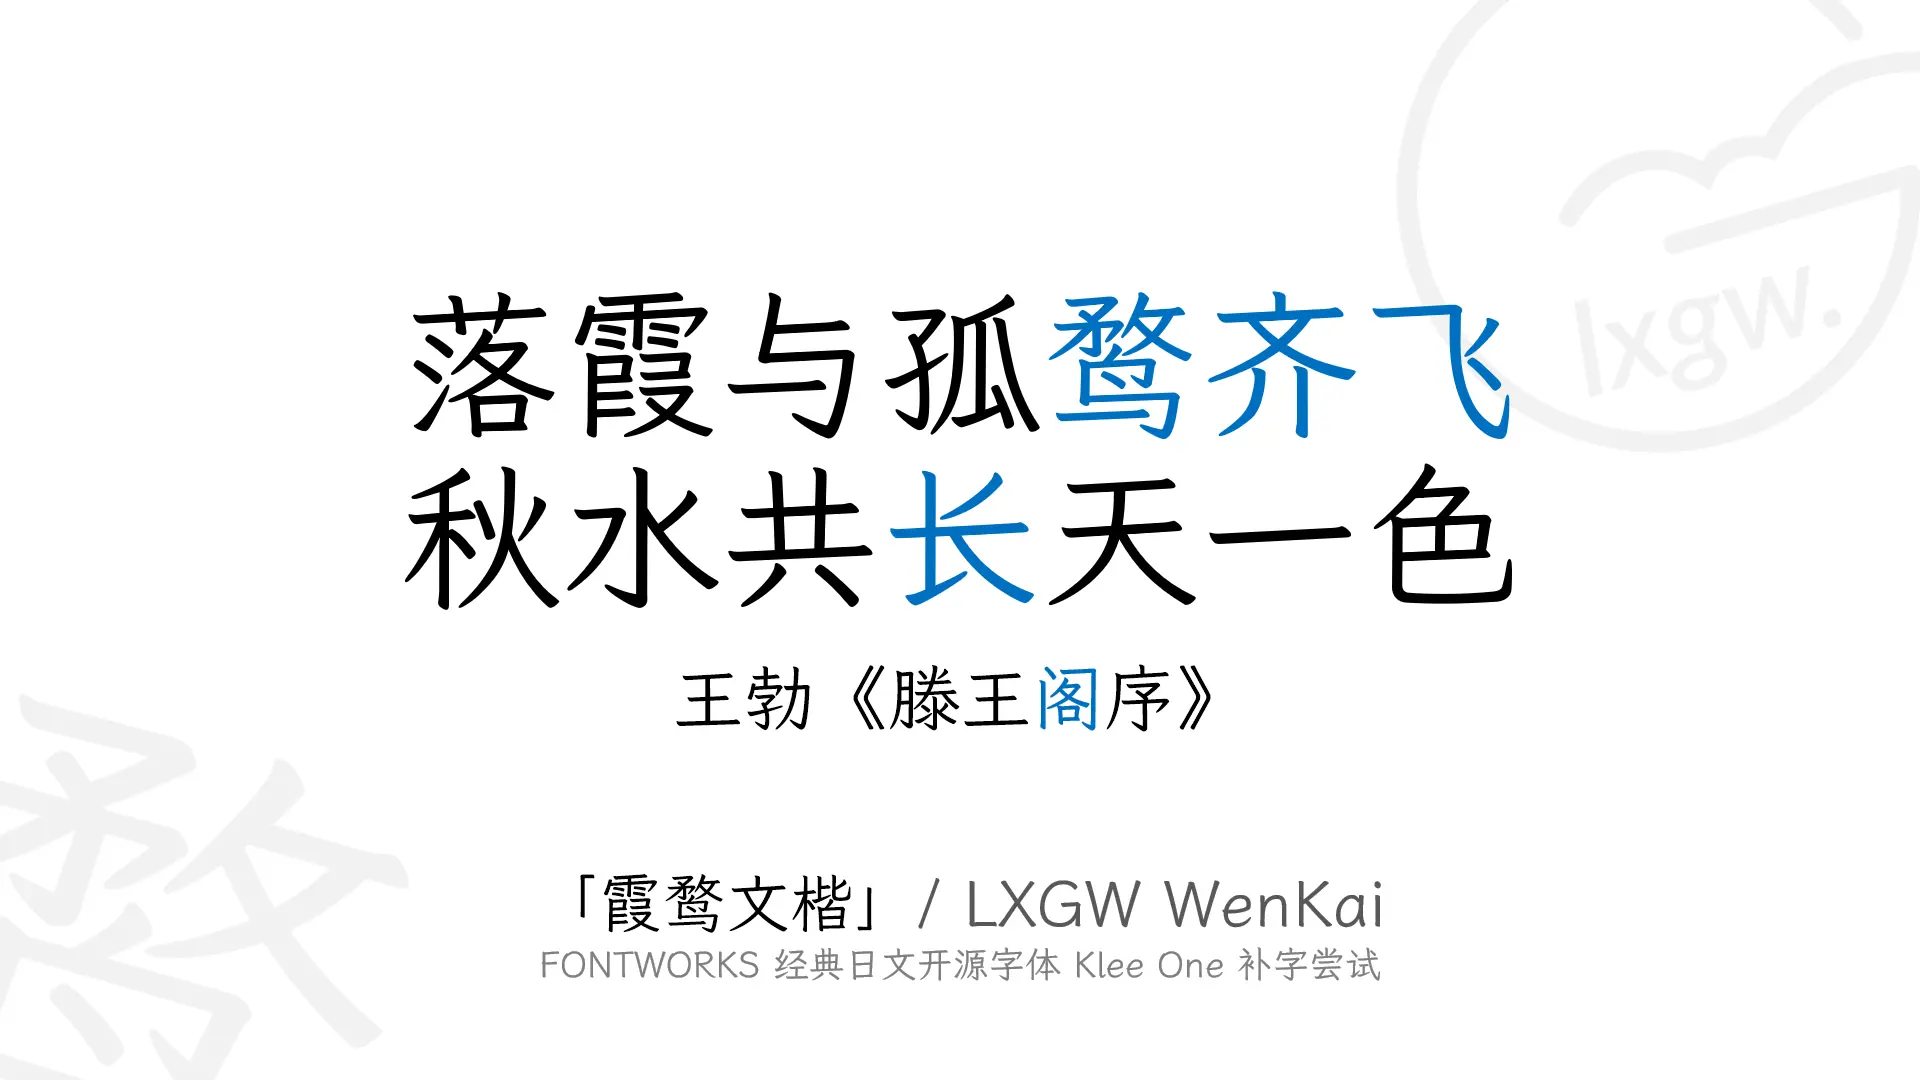 突显您品味和气质的开源免费新中文字体集:  霞鹜文楷/LXGW WenKai